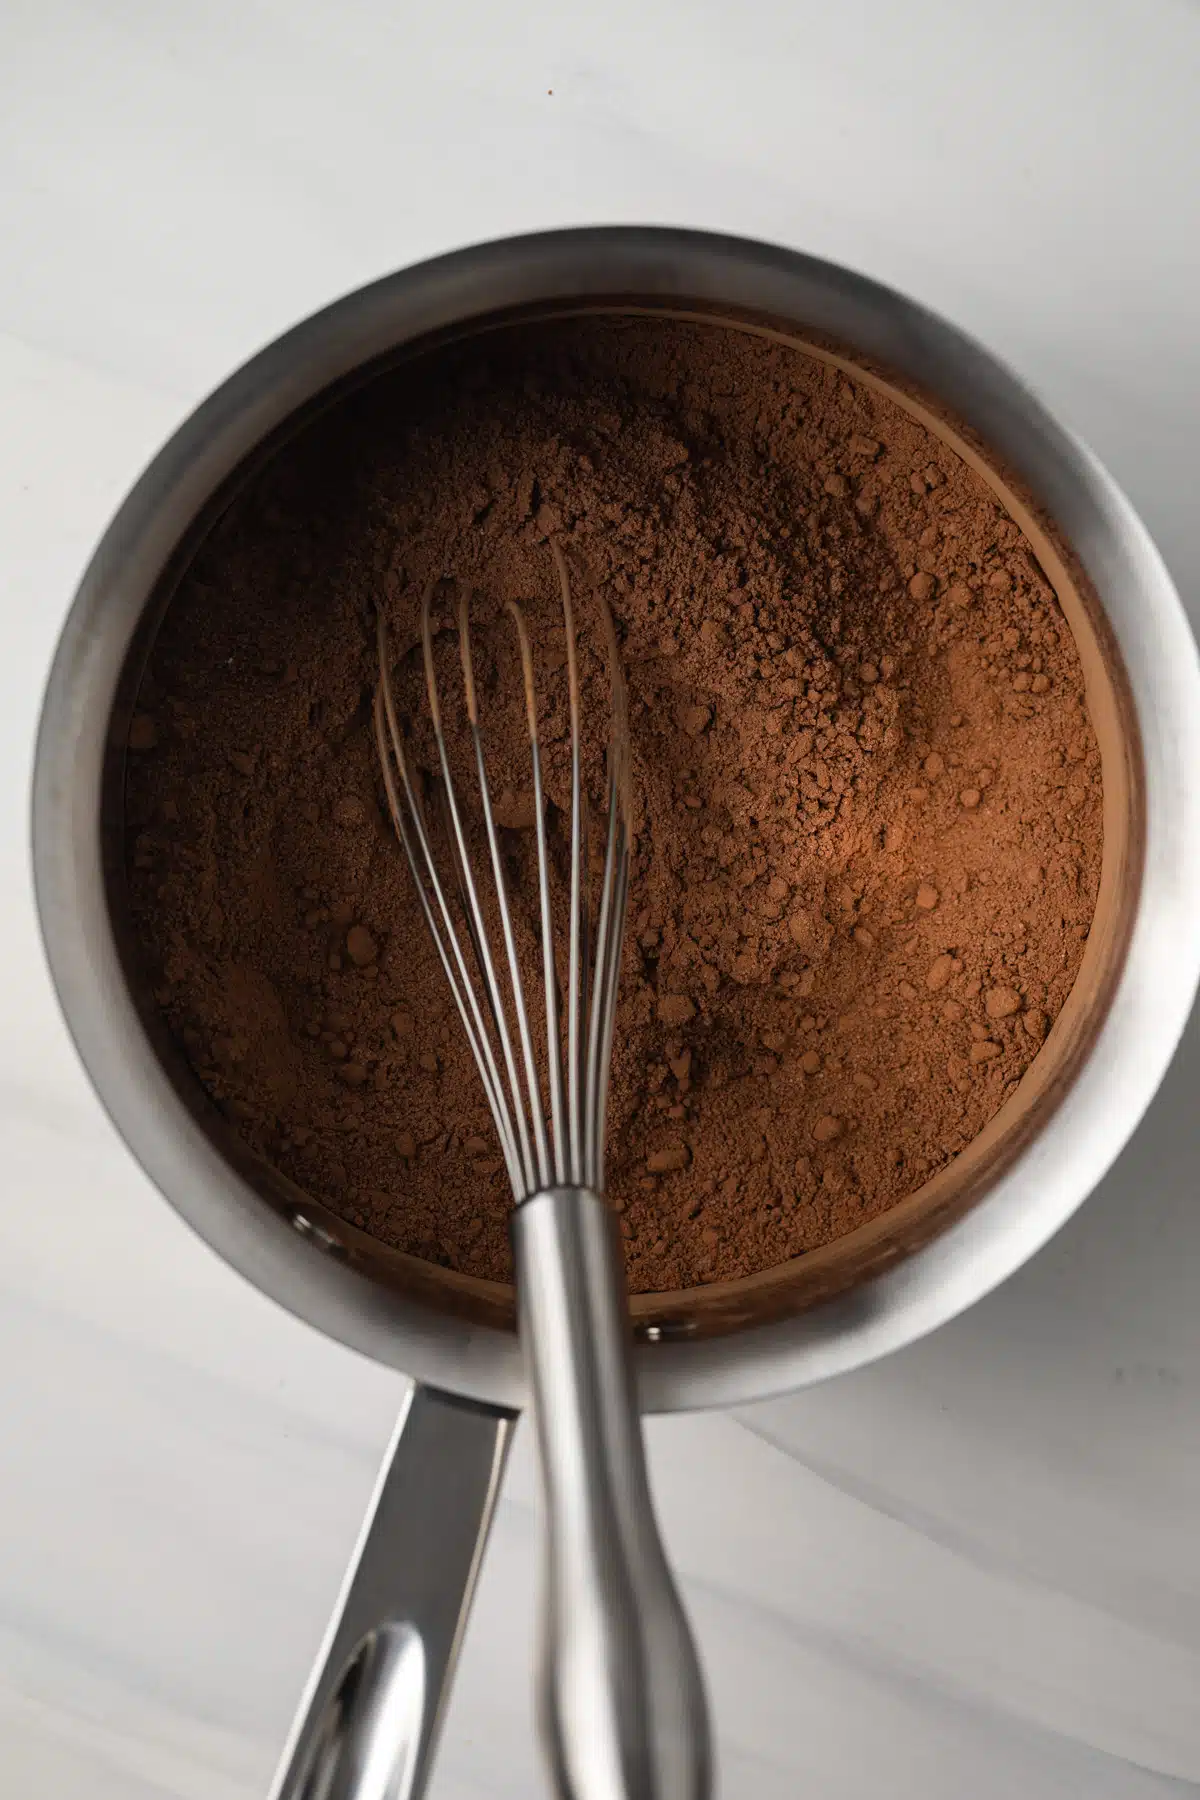 Cocoa powder in saucepan.